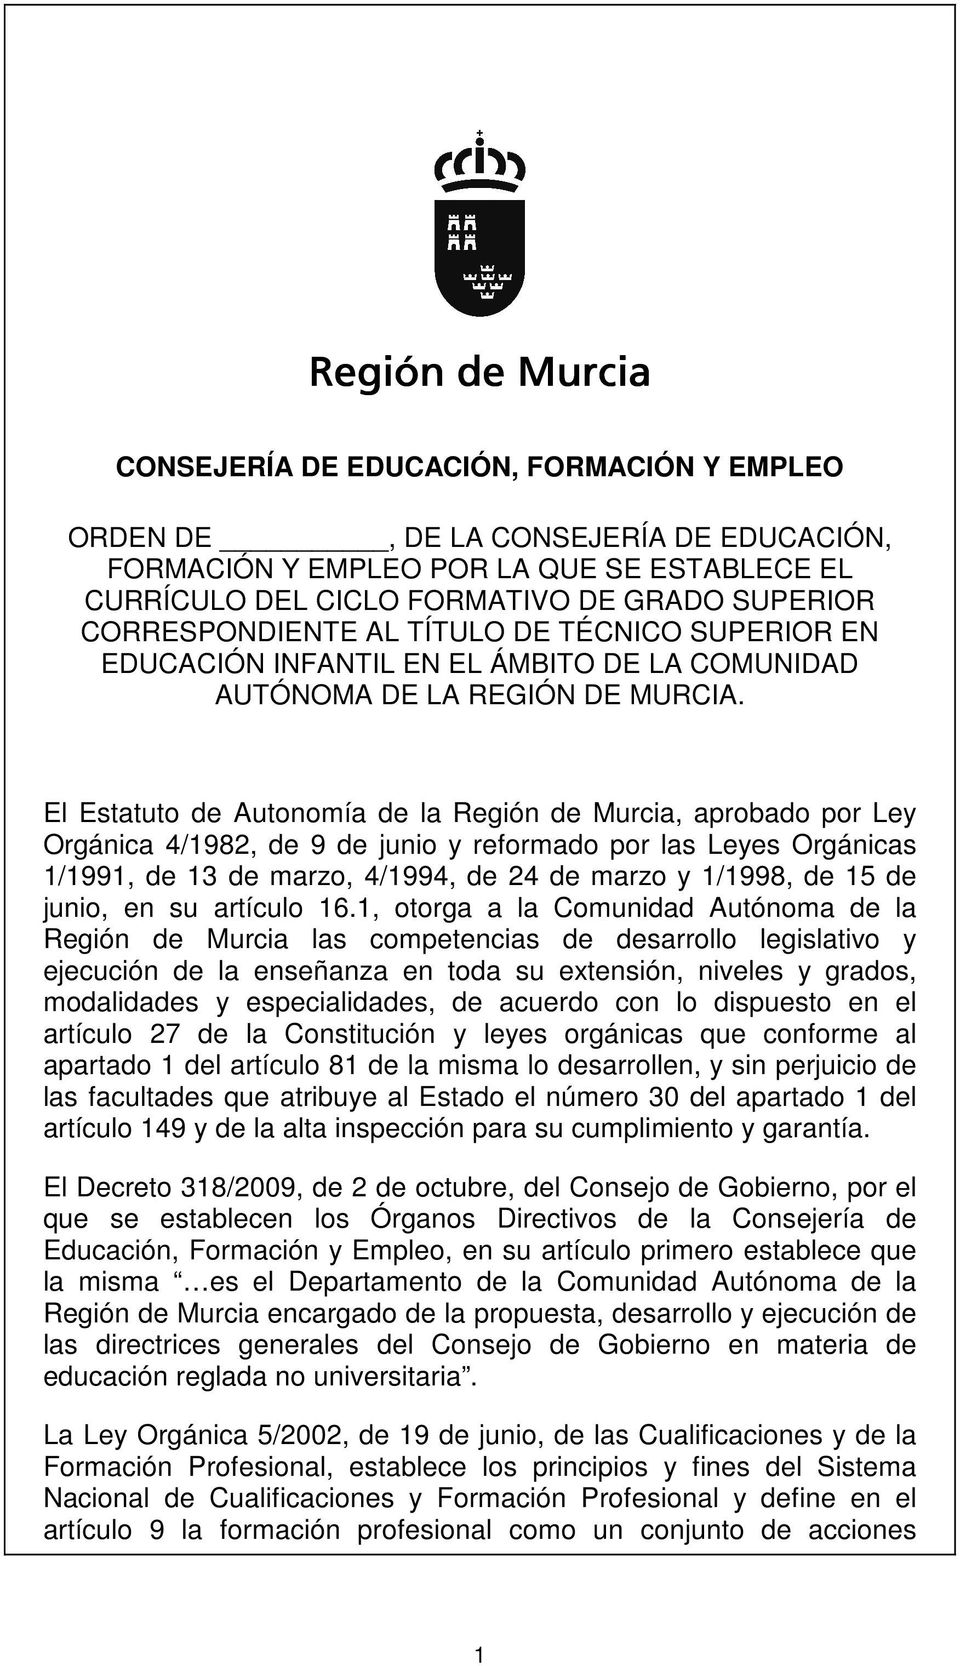 El Estatuto de Autonomía de la Región de Murcia, aprobado por Ley Orgánica 4/1982, de 9 de junio y reformado por las Leyes Orgánicas 1/1991, de 13 de marzo, 4/1994, de 24 de marzo y 1/1998, de 15 de